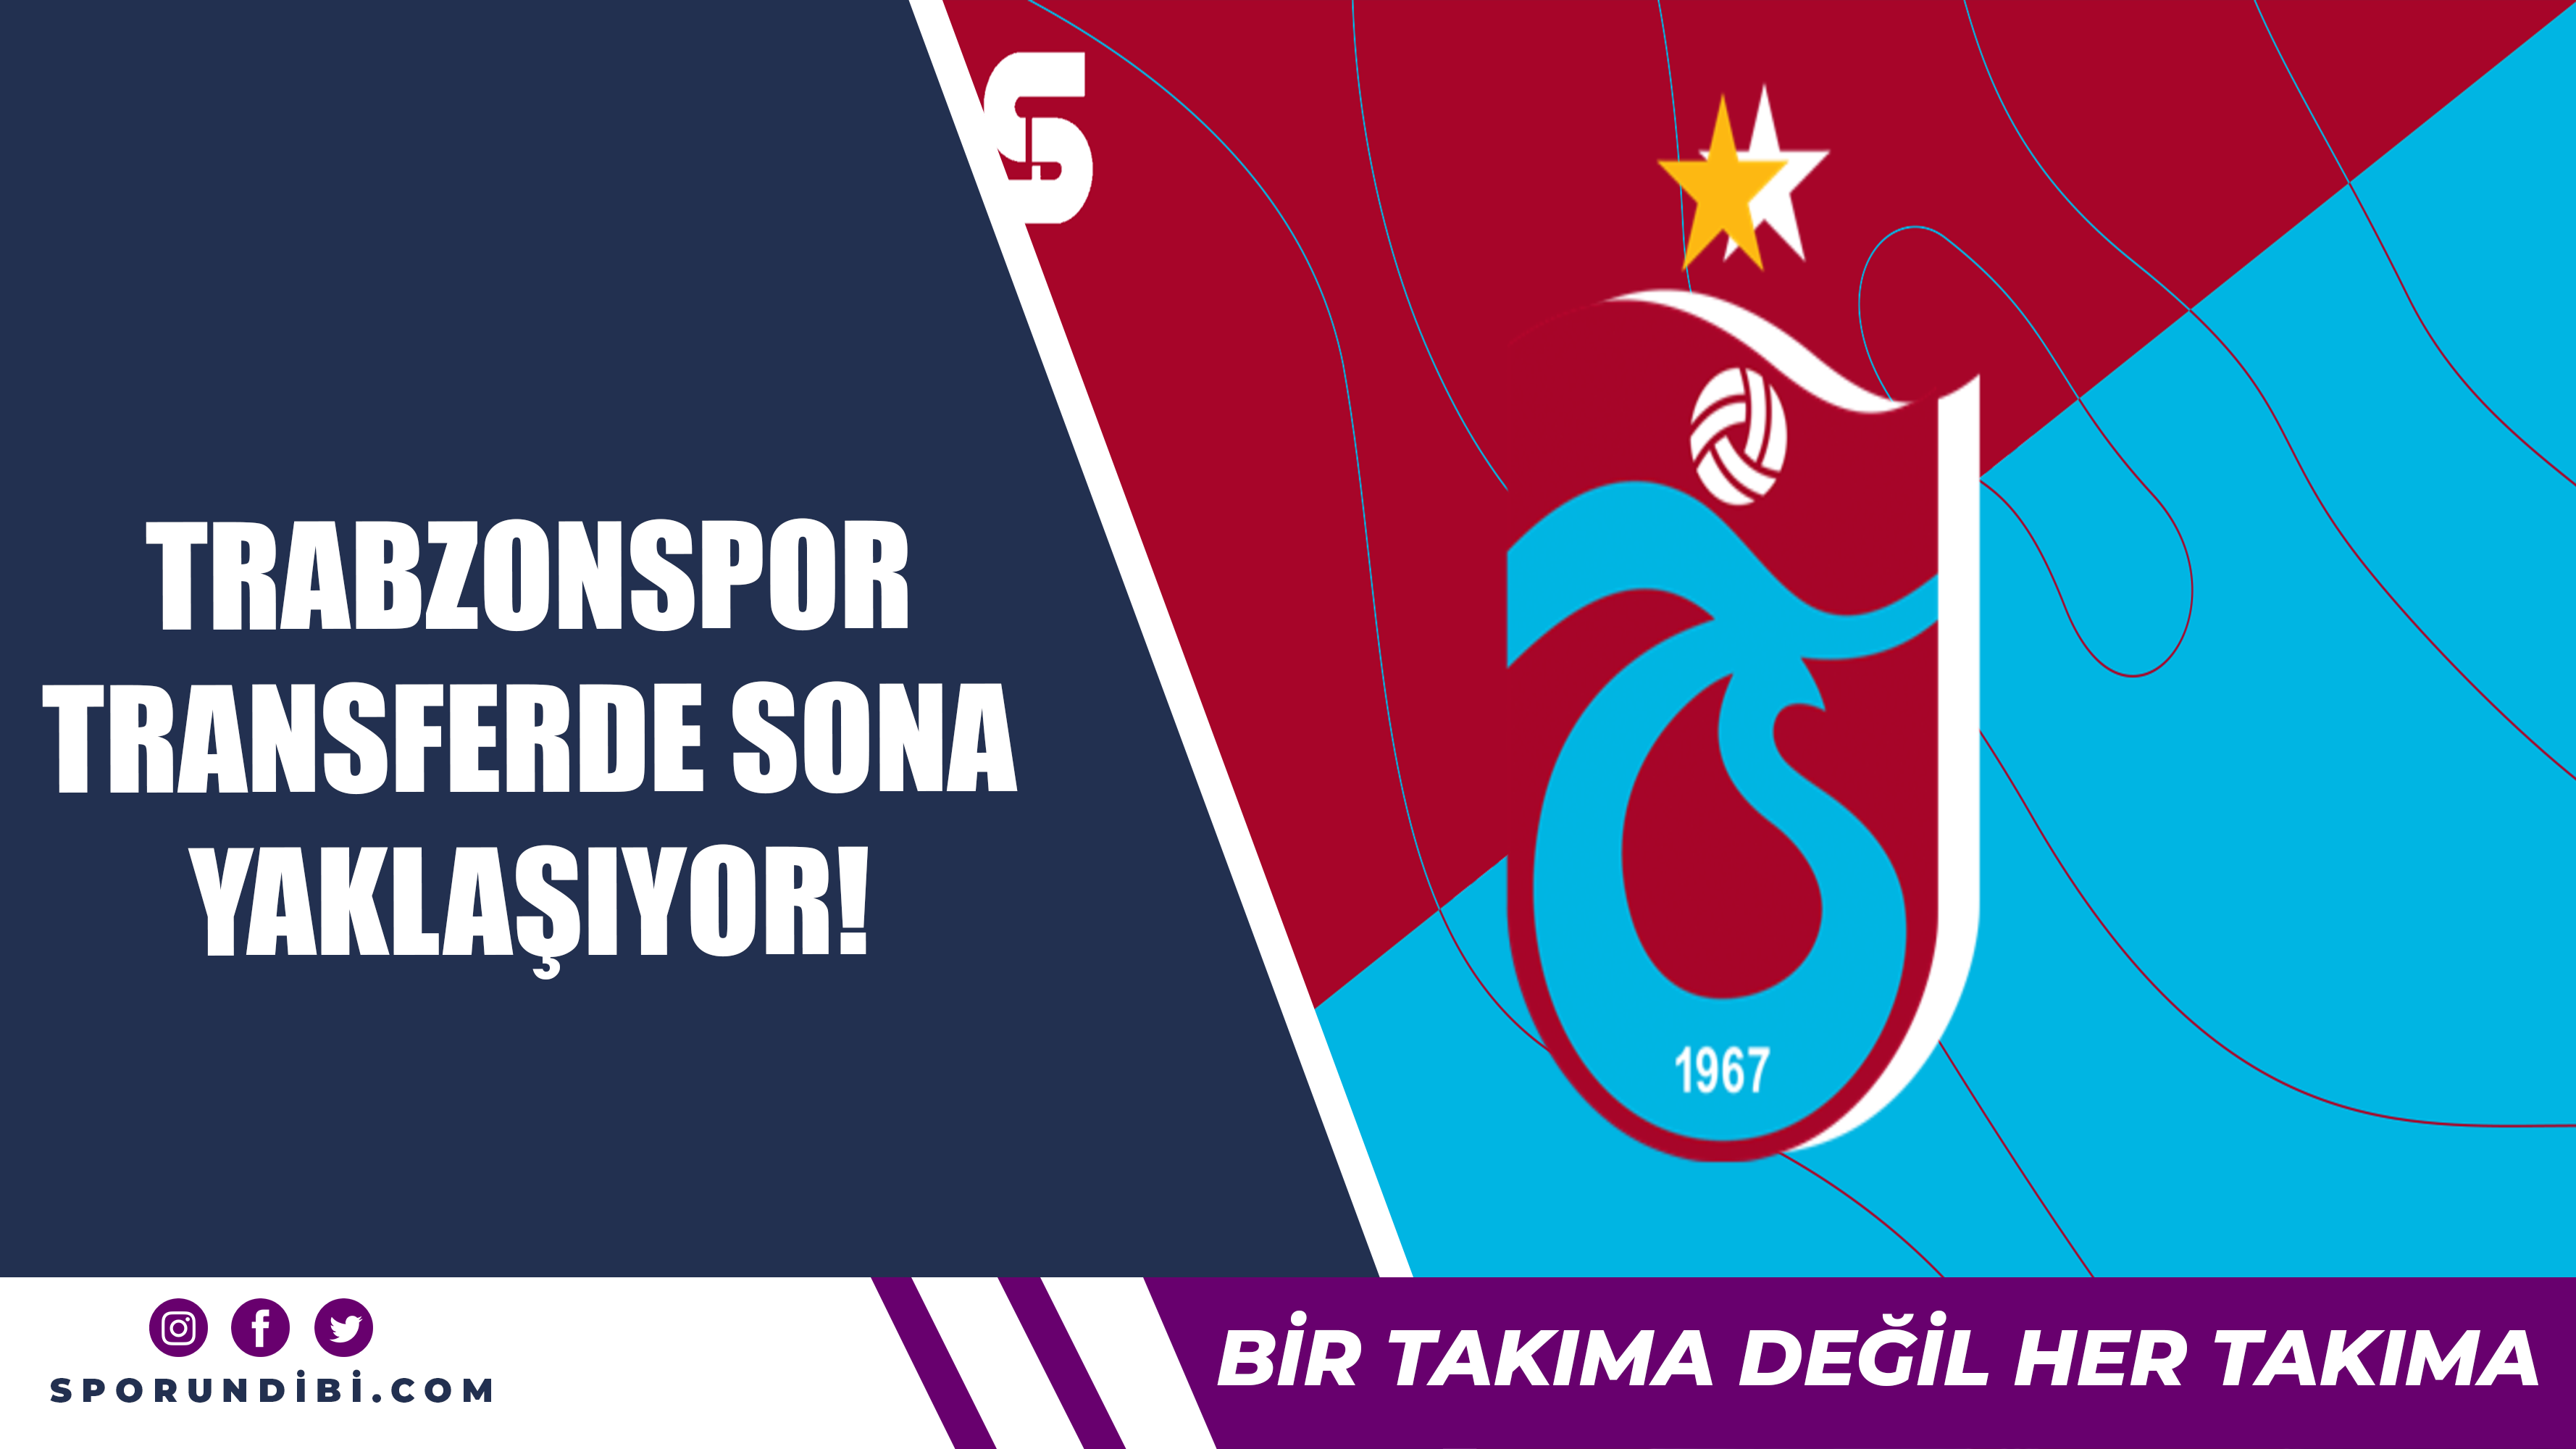 Trabzonspor transferde sona yaklaşıyor!